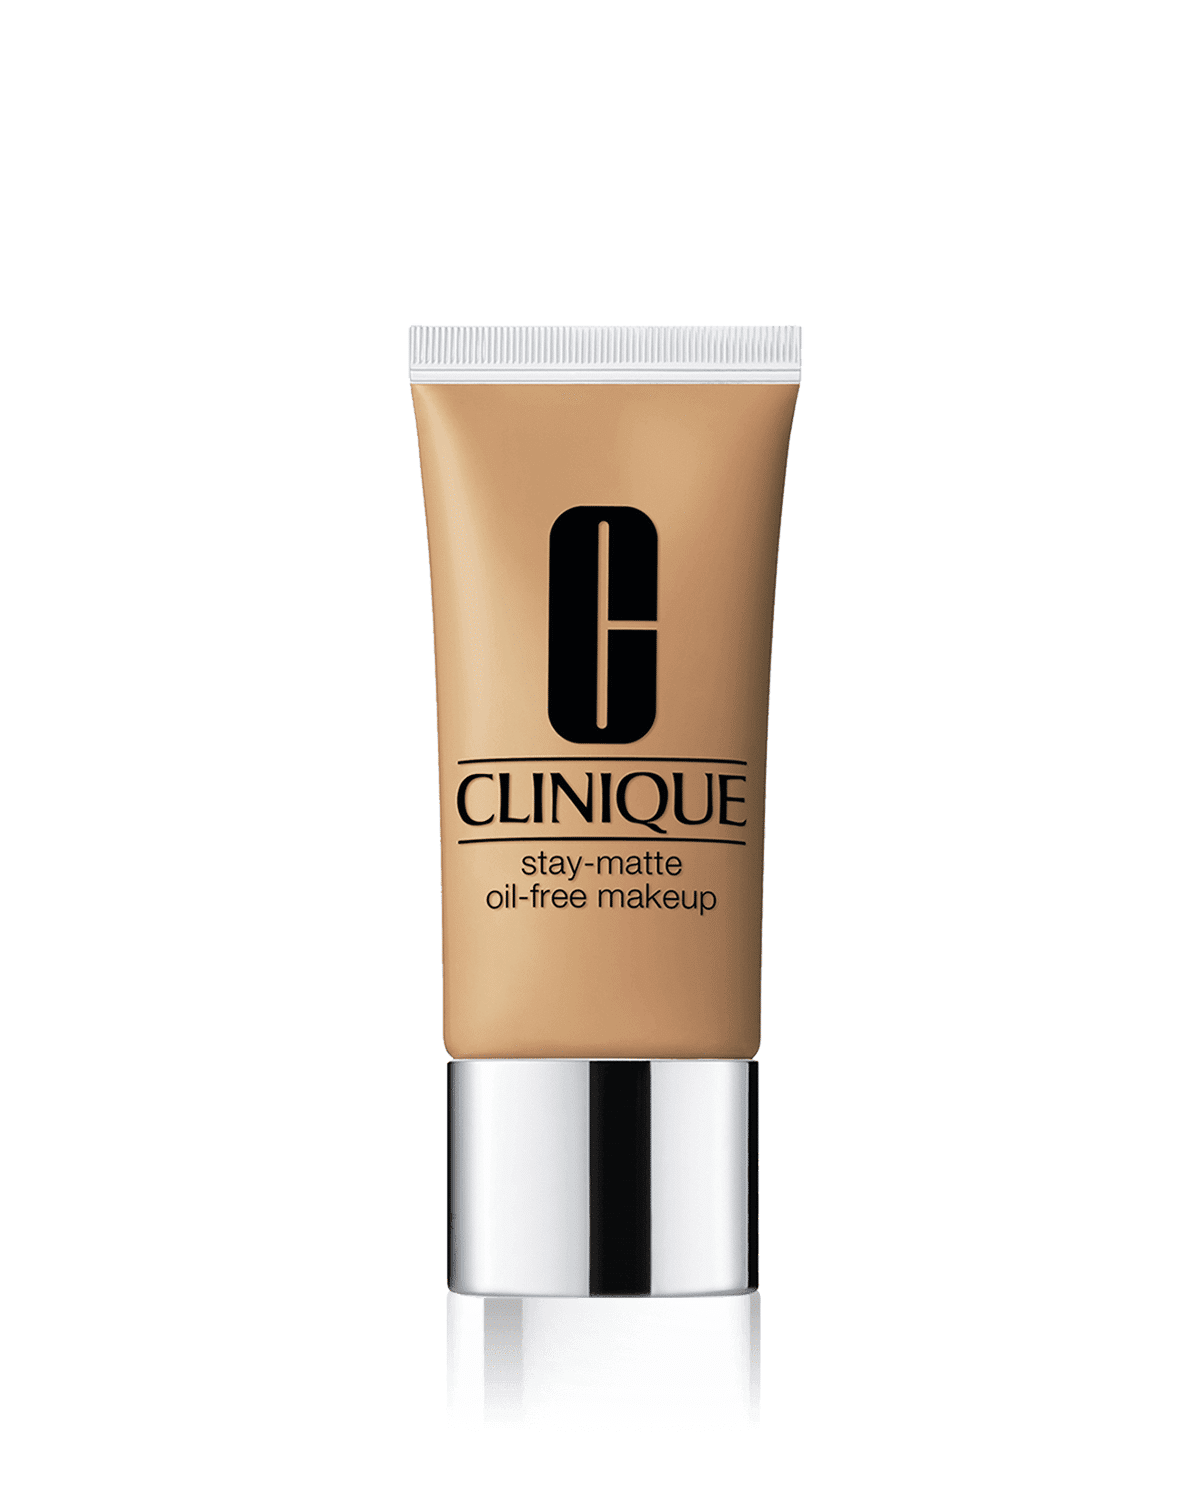 Clinique Stay-Matte Oil-Free Makeup, CN 90 Sand - 1 oz